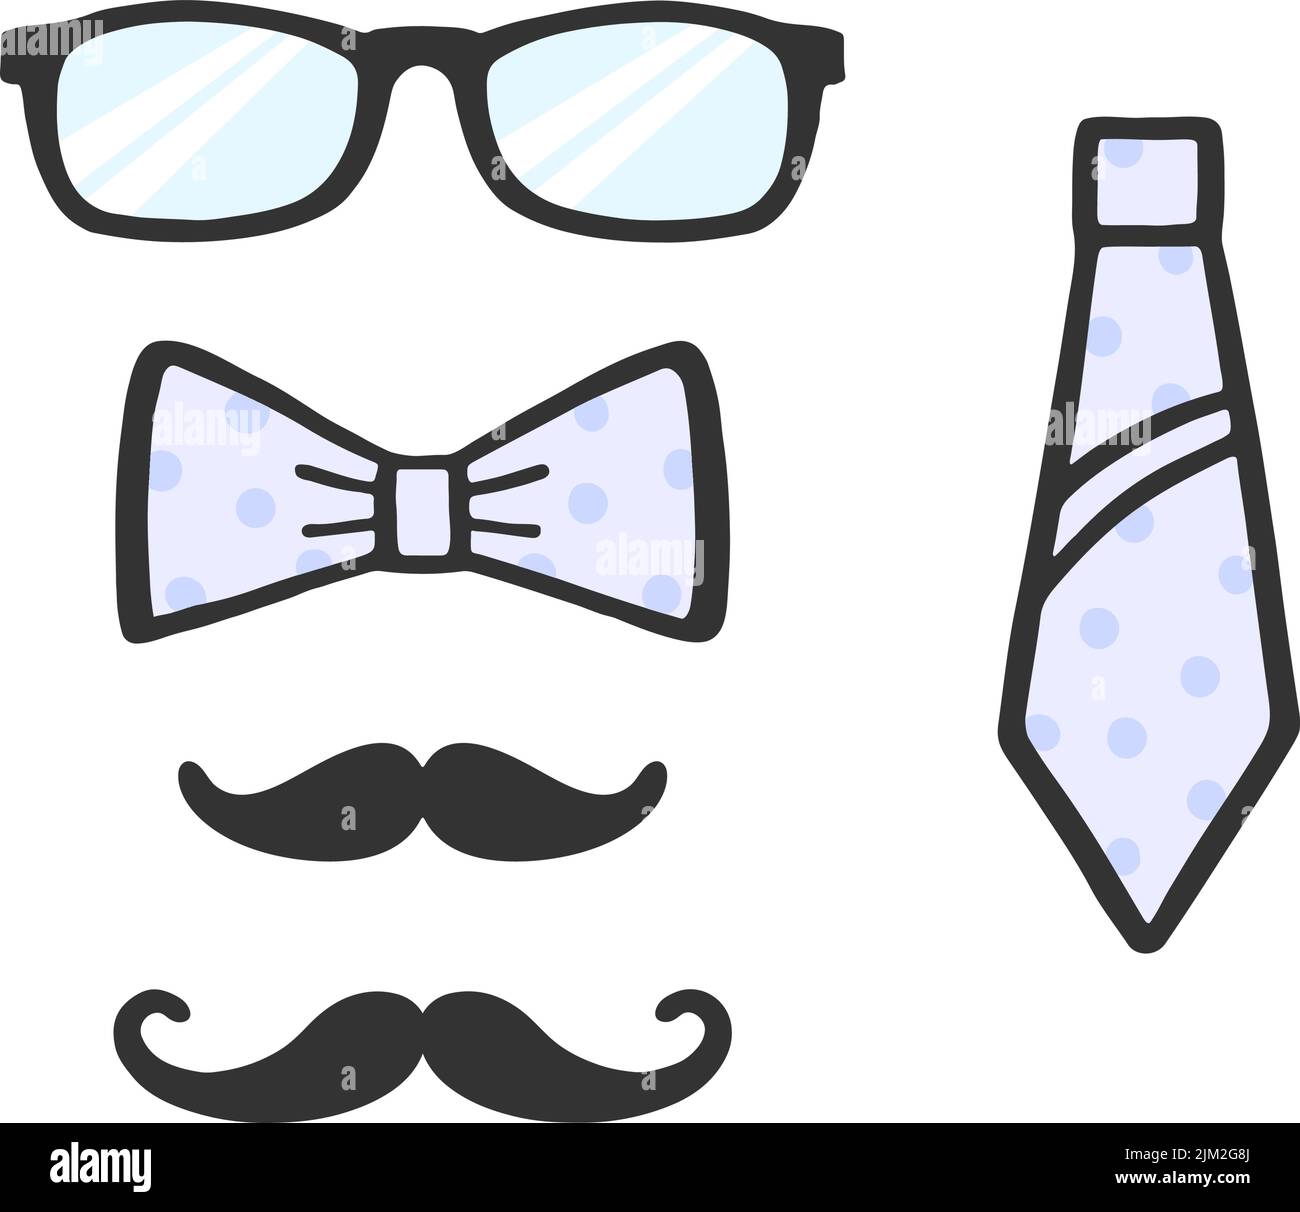 Fotoprops-Set. Brille, Schnurrbart, Schleife und Krawatte für Selfie. Kollektion von männlichen Fotozubehör. Set aus Photobooth. Vektor Stock Vektor